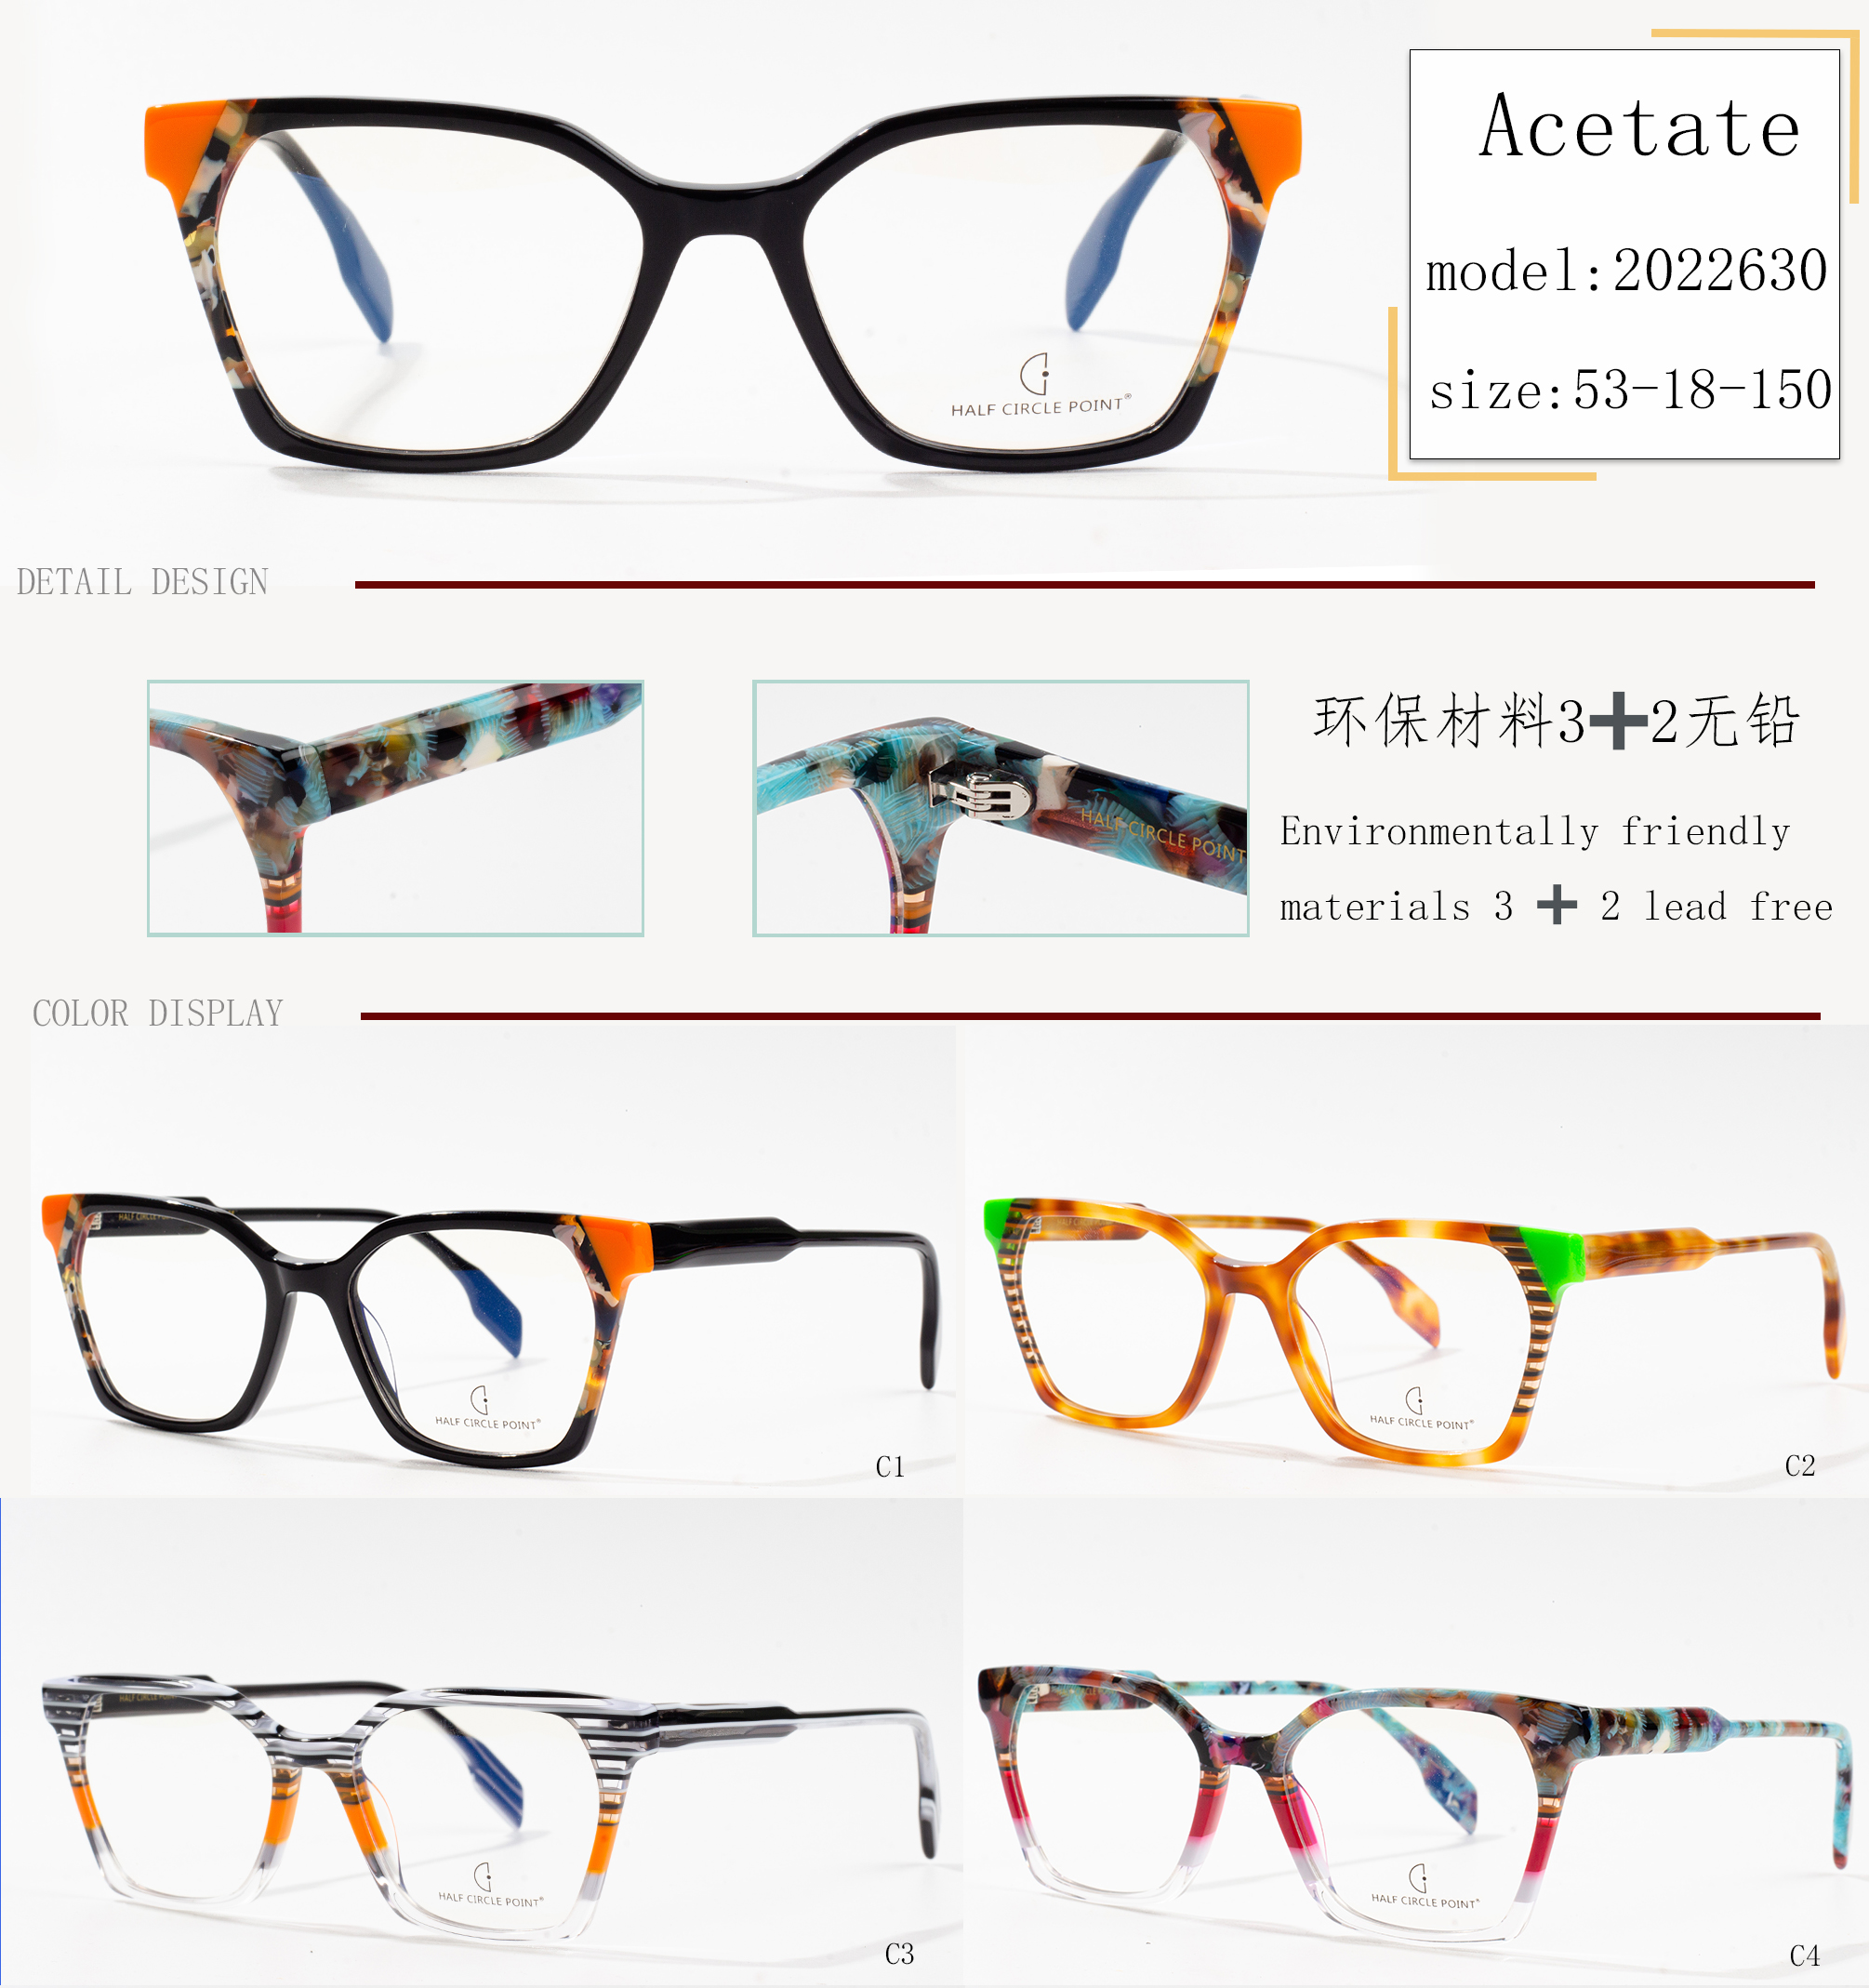 dg sunglasses wholesale